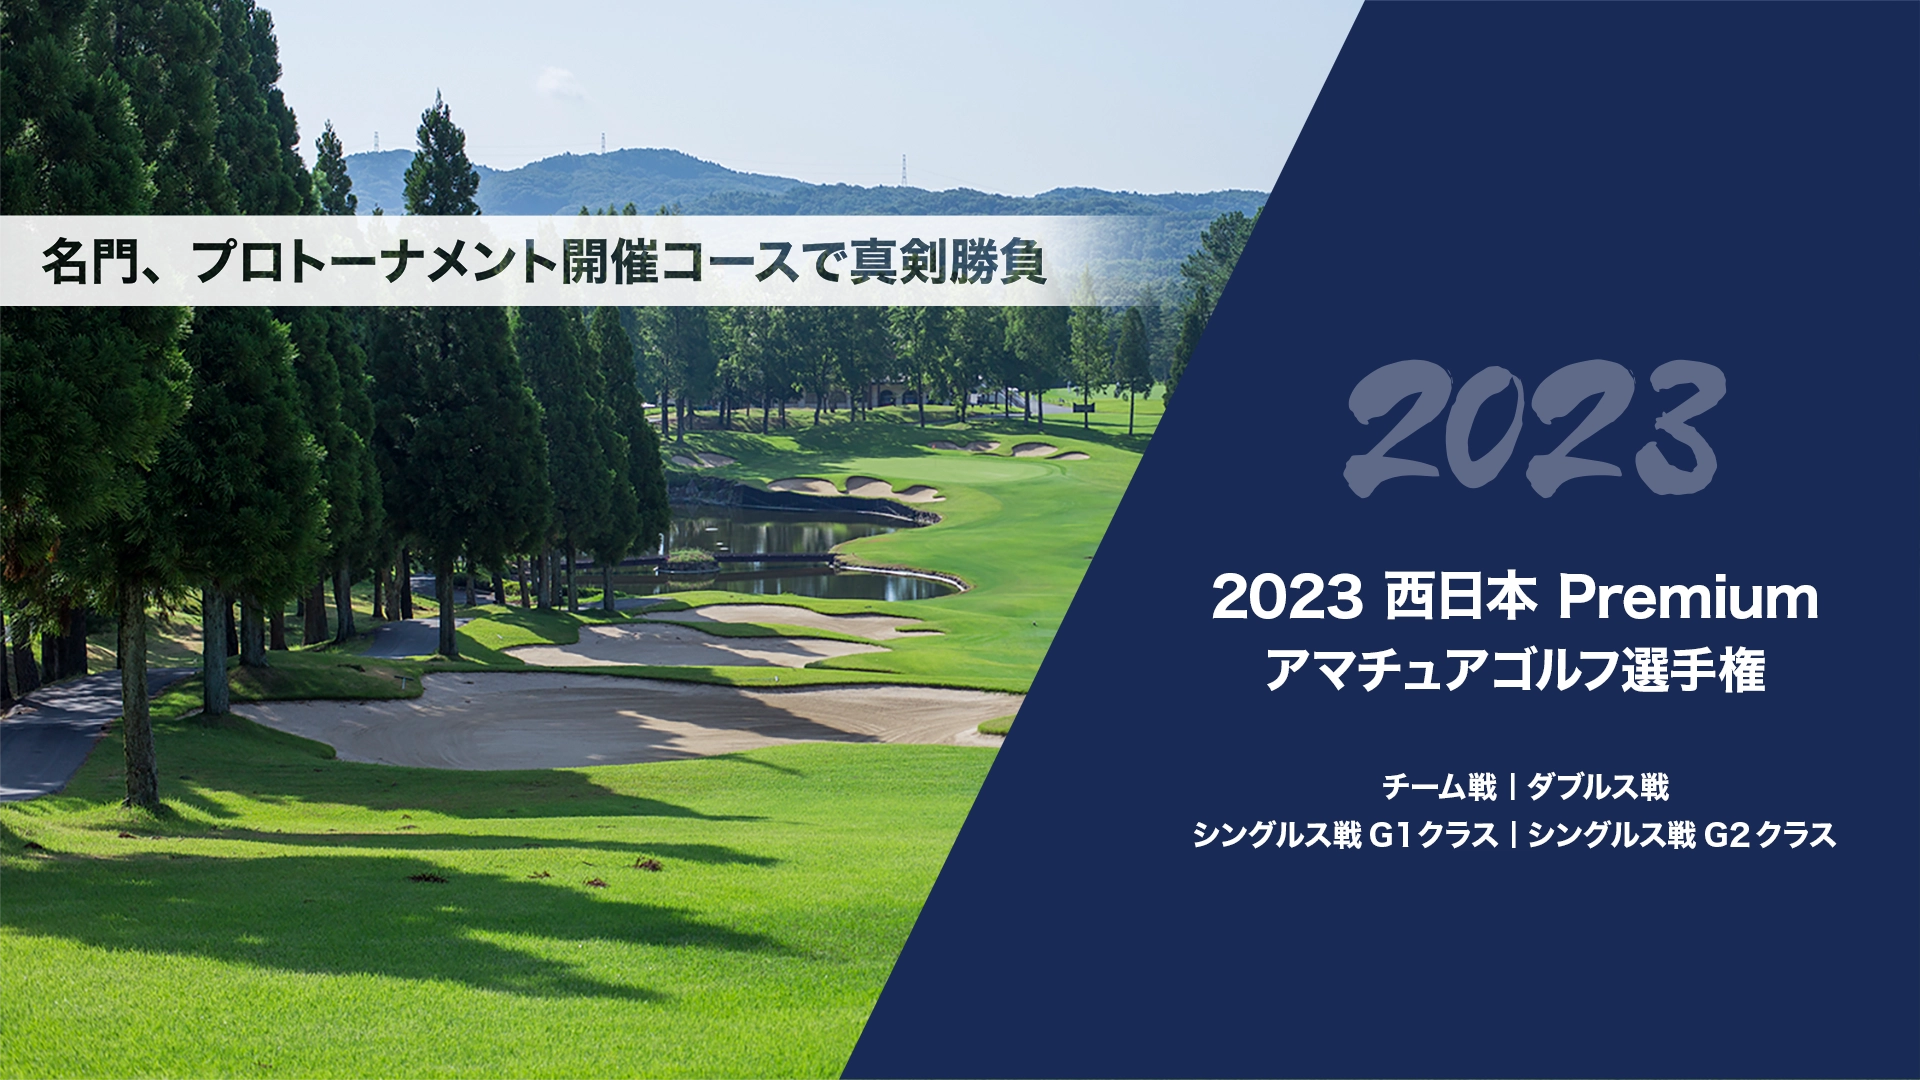 2023西日本Premiumアマチュアゴルフ選手権